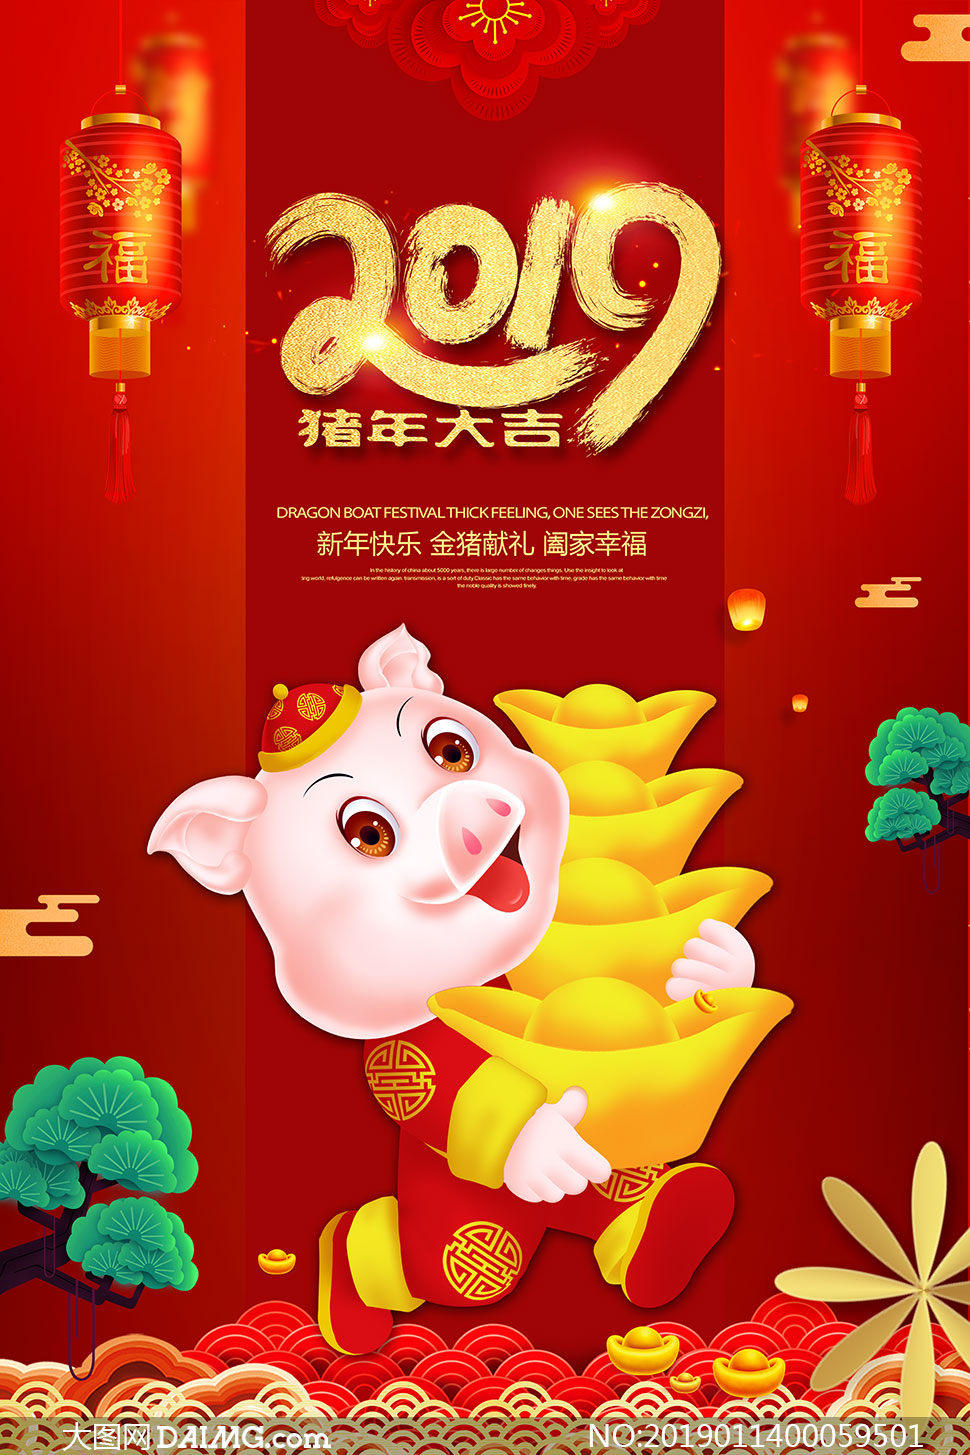 2019猪年大吉宣传海报设计psd模板